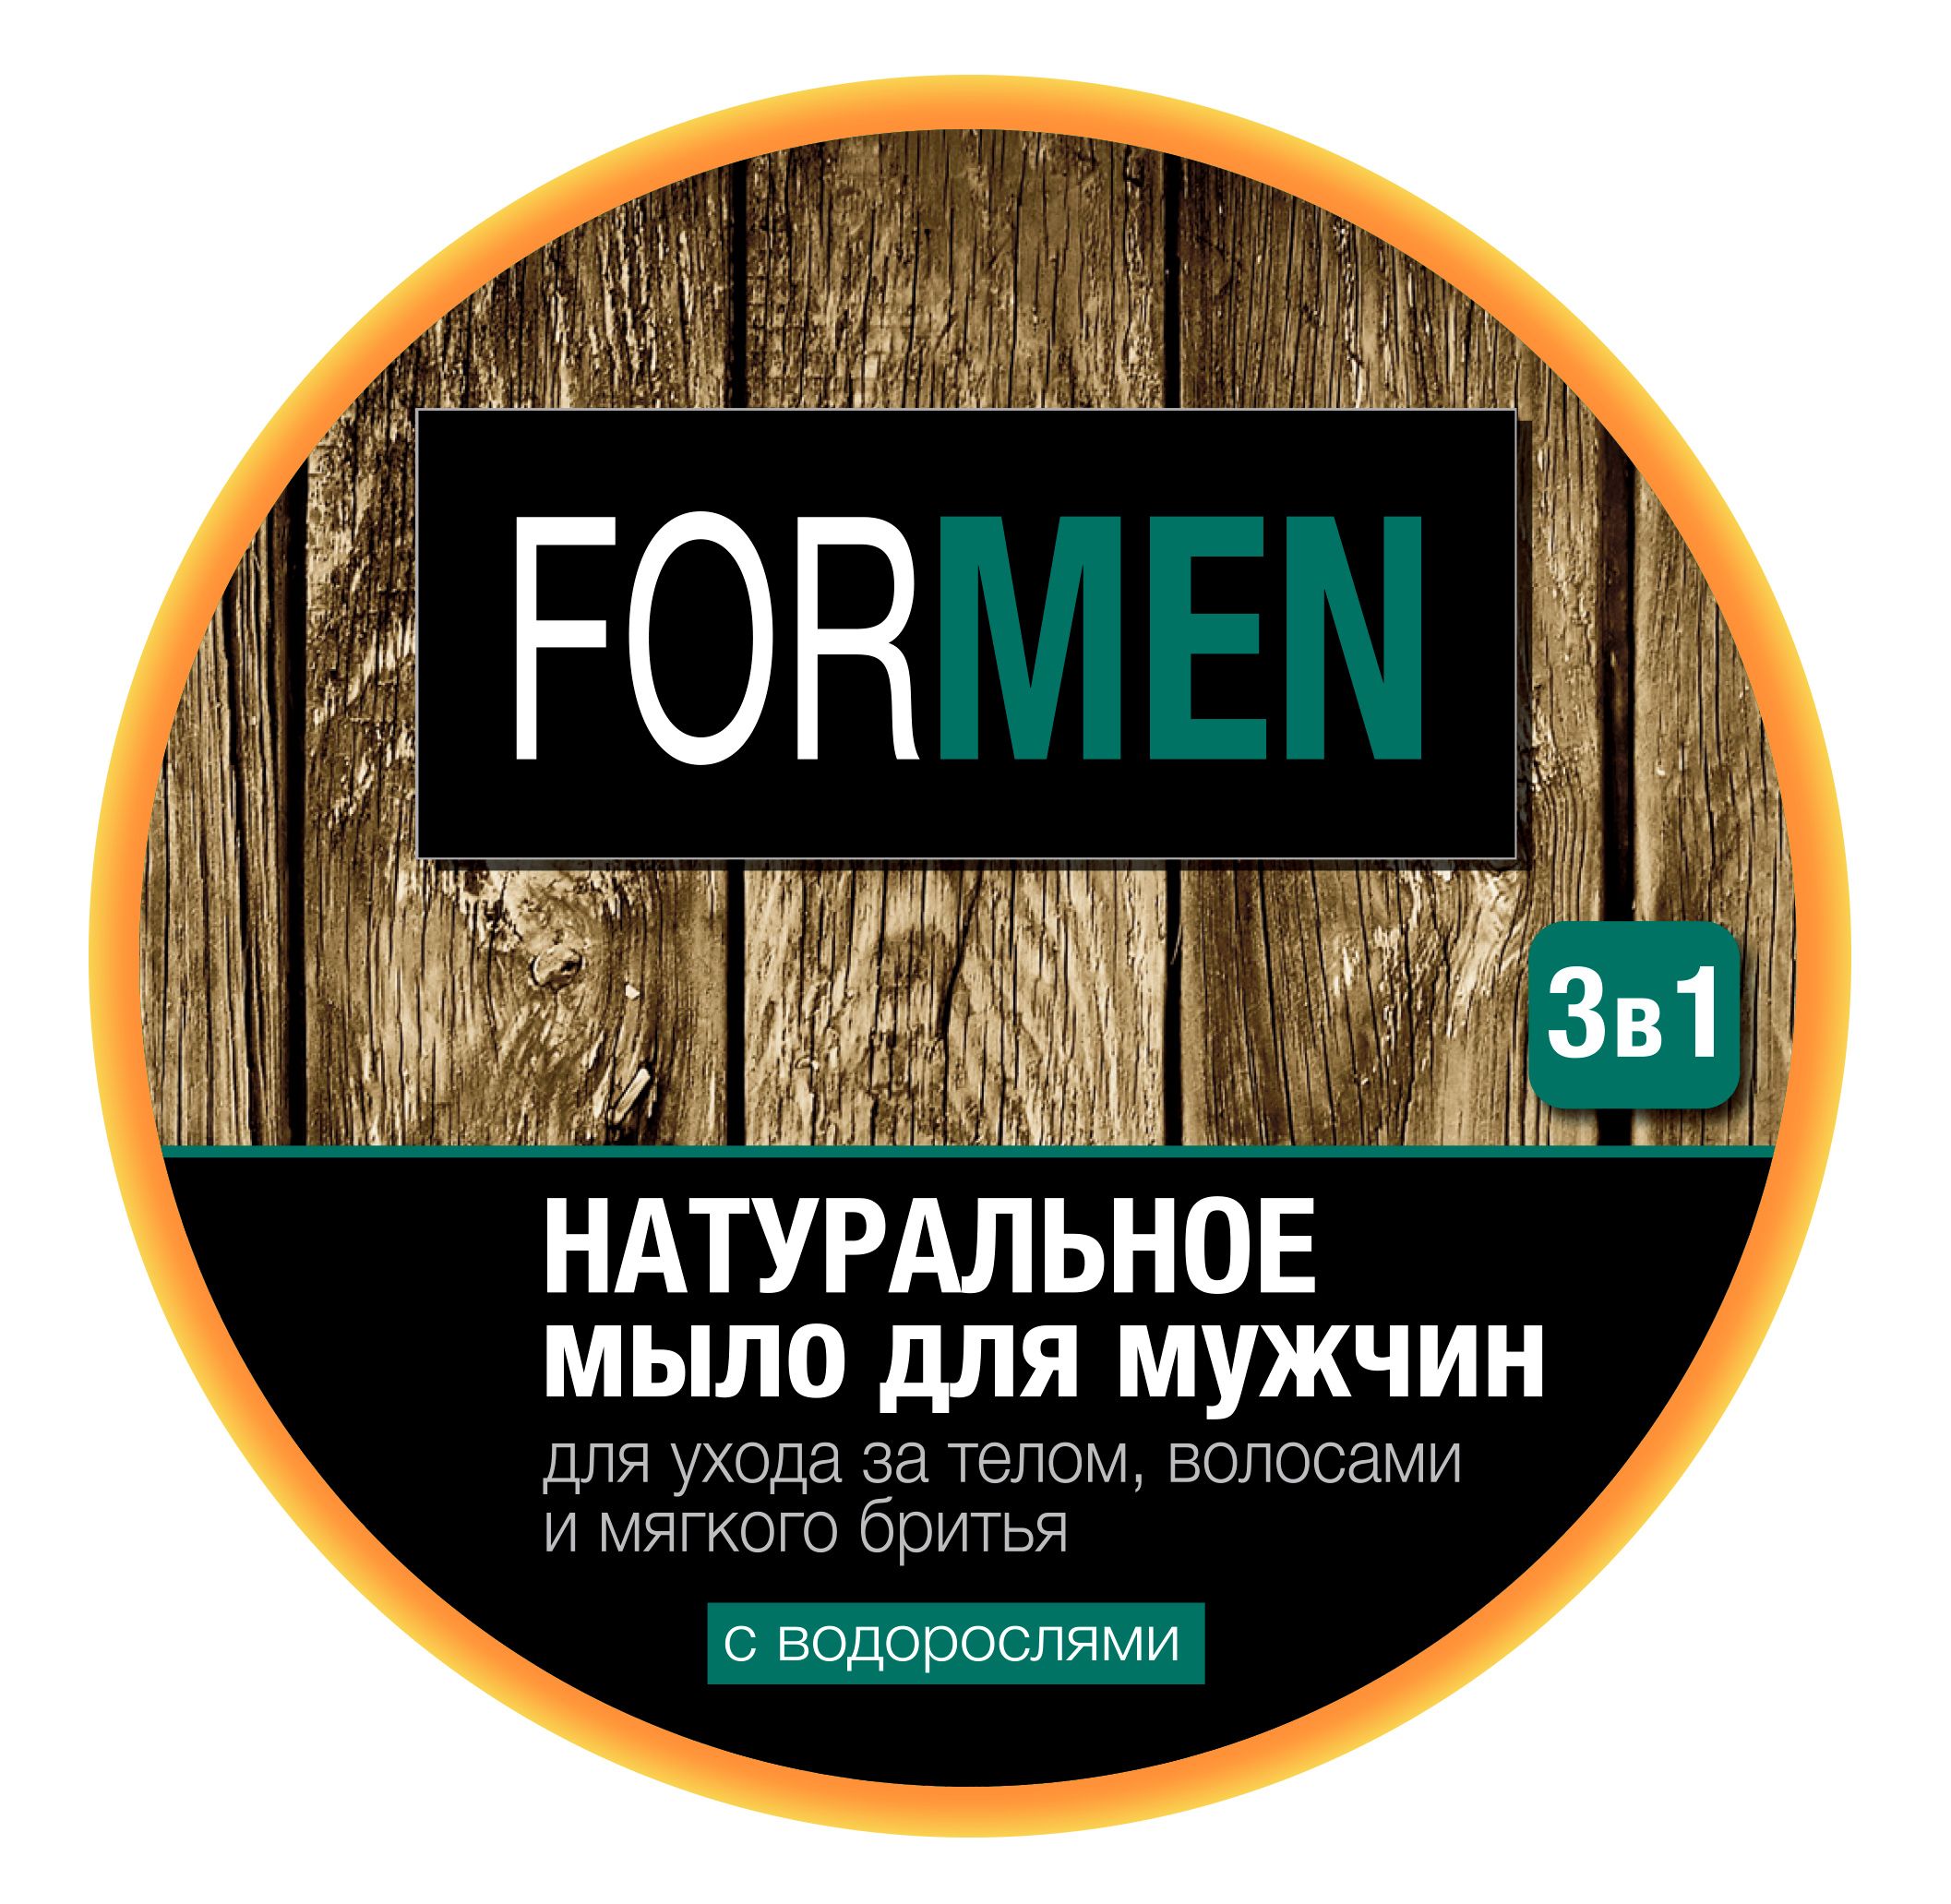 Мыло для мужчин Floresan 3в1 для ухода за телом, волосами и мягкого бритья 450 г